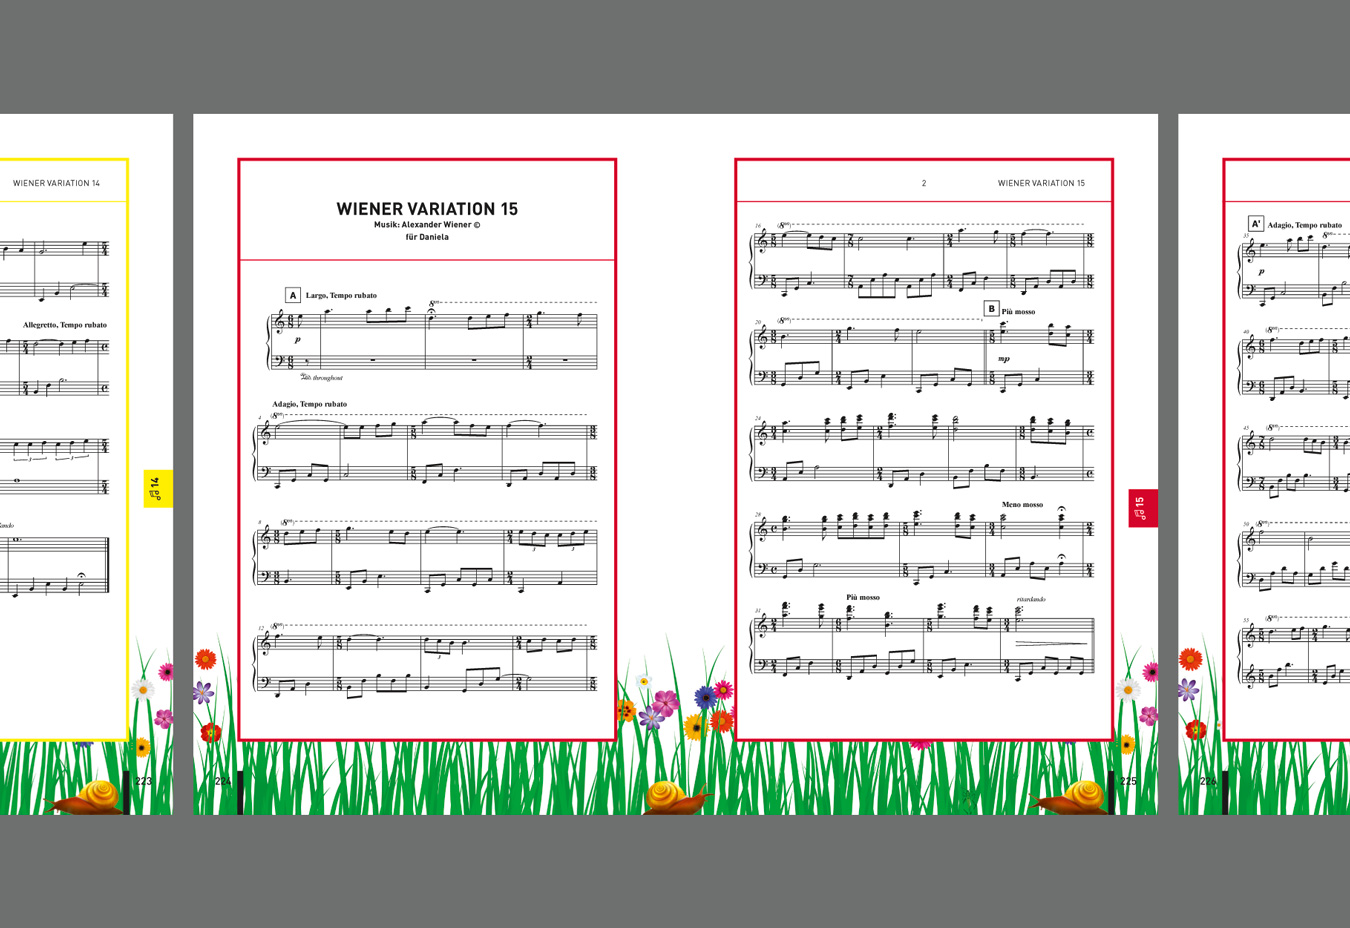 MENTAGRAMM IV - The Viennese Piano Variation 15 | Alexander Nickl